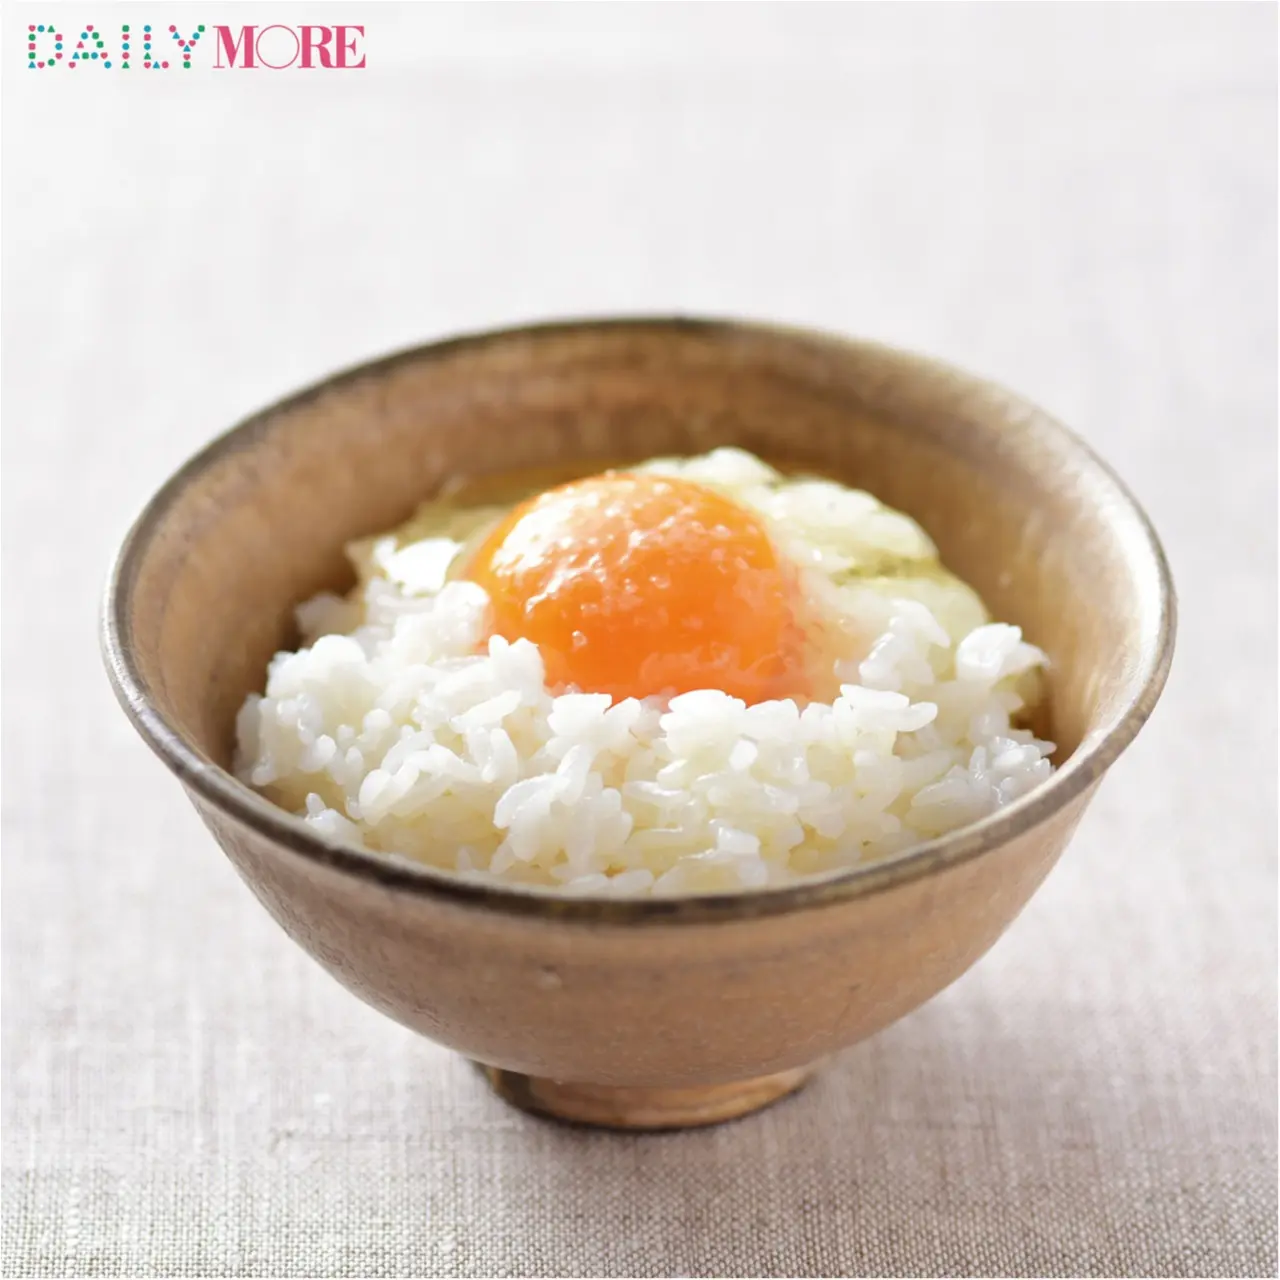 卵かけごはんの激ウマ度 さらに倍 大のお米好きがこっそり教える Best Of 卵かけごはんのお供 3選 ライフスタイル最新情報 Daily More